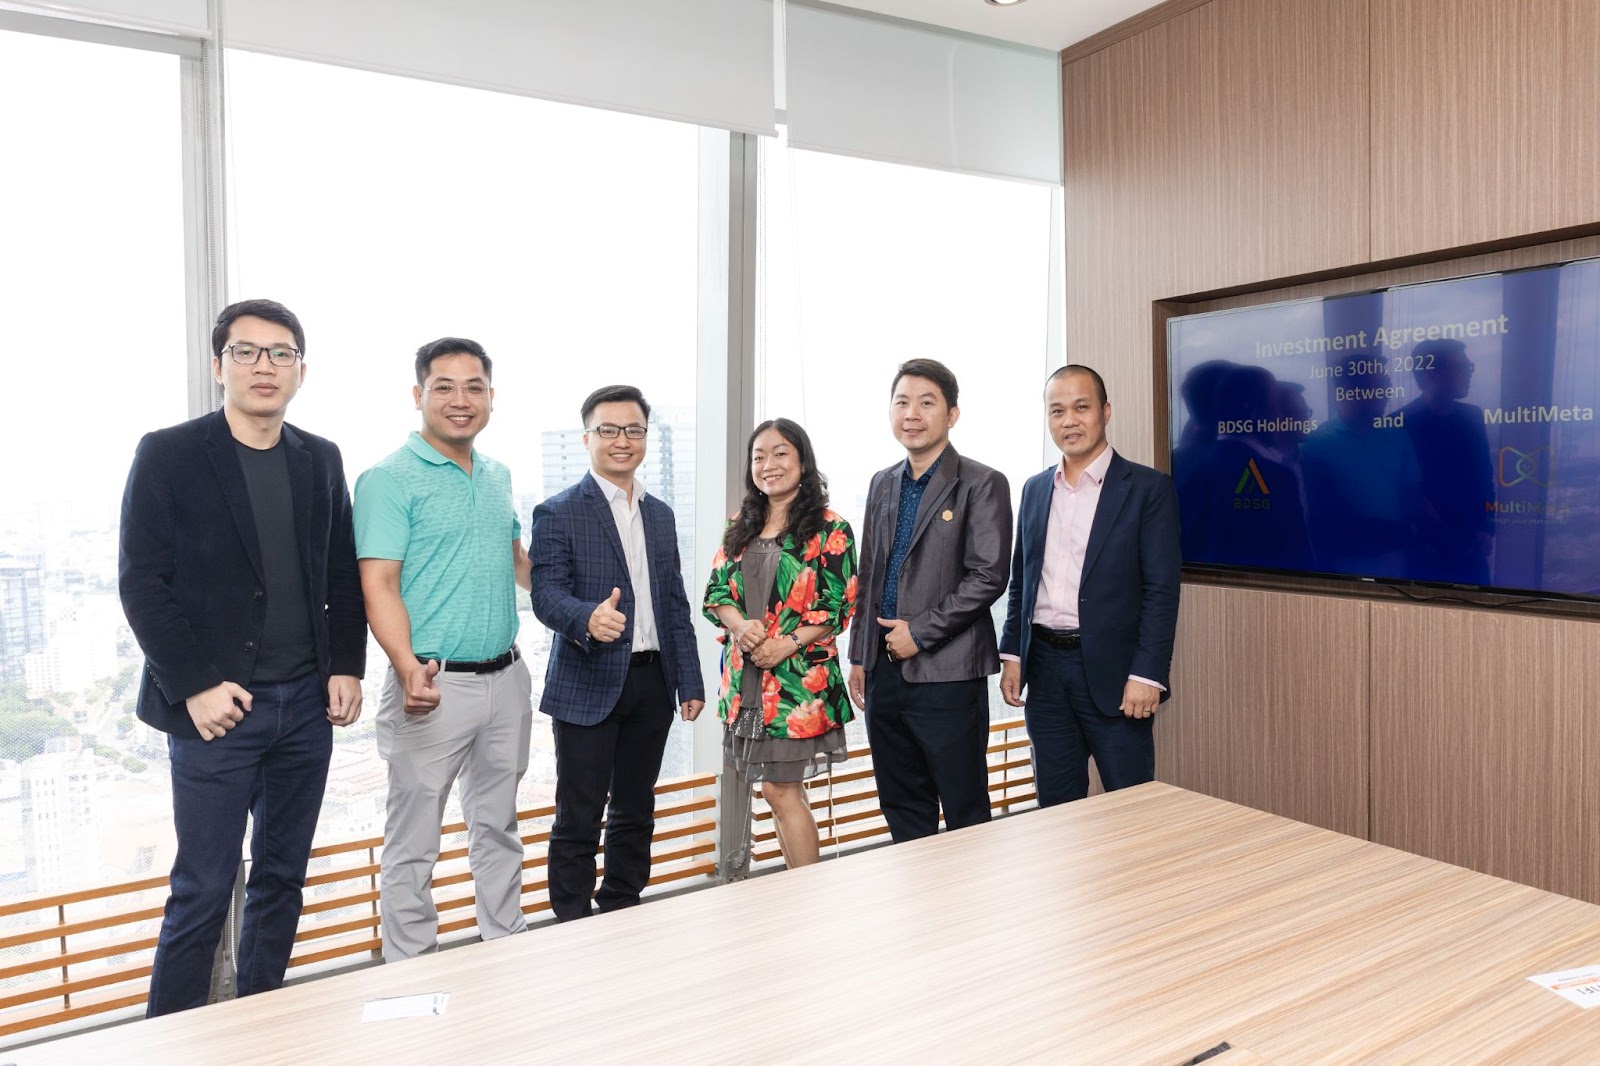 Startup Việt trụ sở Singapore ký thỏa thuận hợp tác và đầu tư với Quỹ đầu tư khởi nghiệp BDSG Holdings phát triển nền tảng metaverse - 5